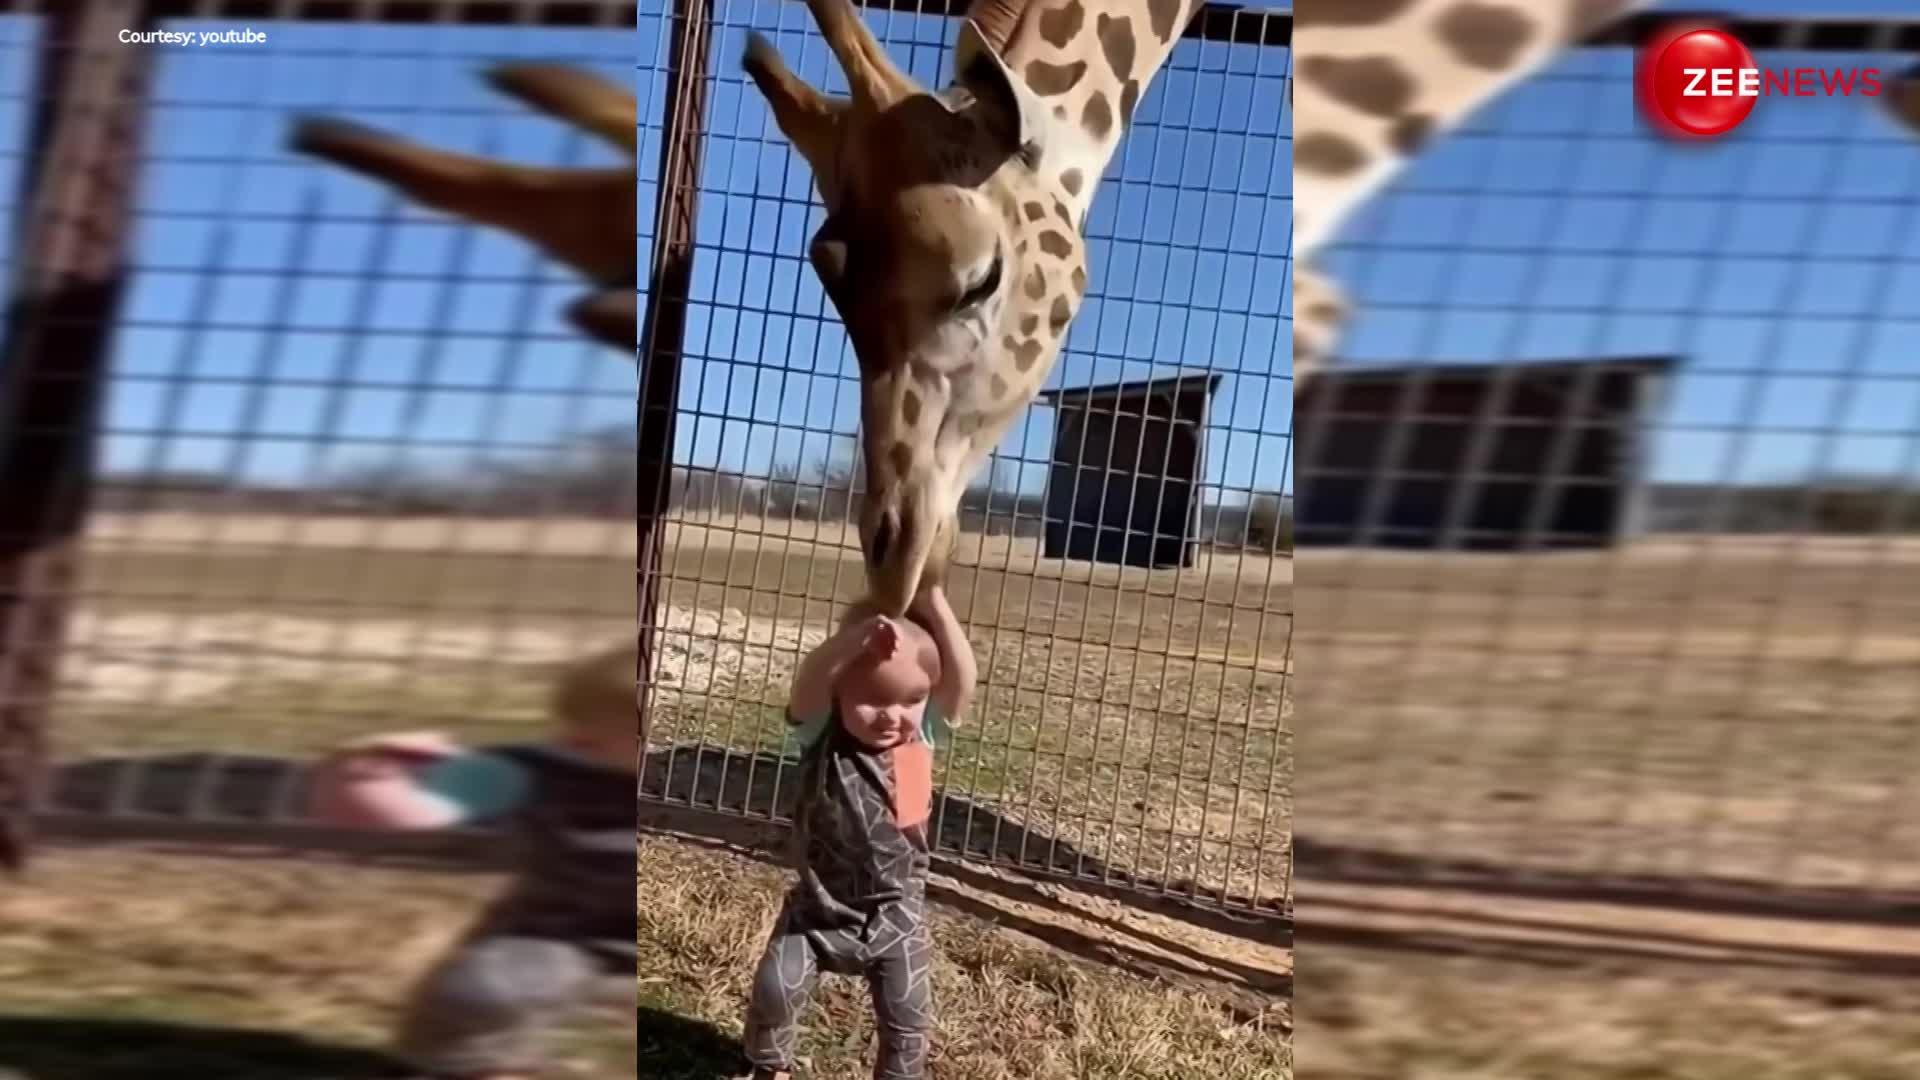 Giraffe video: जिराफ ने छोटे बच्चे को अकेला देख किया ऐसा कि लोग बोल उठे सो क्यूट